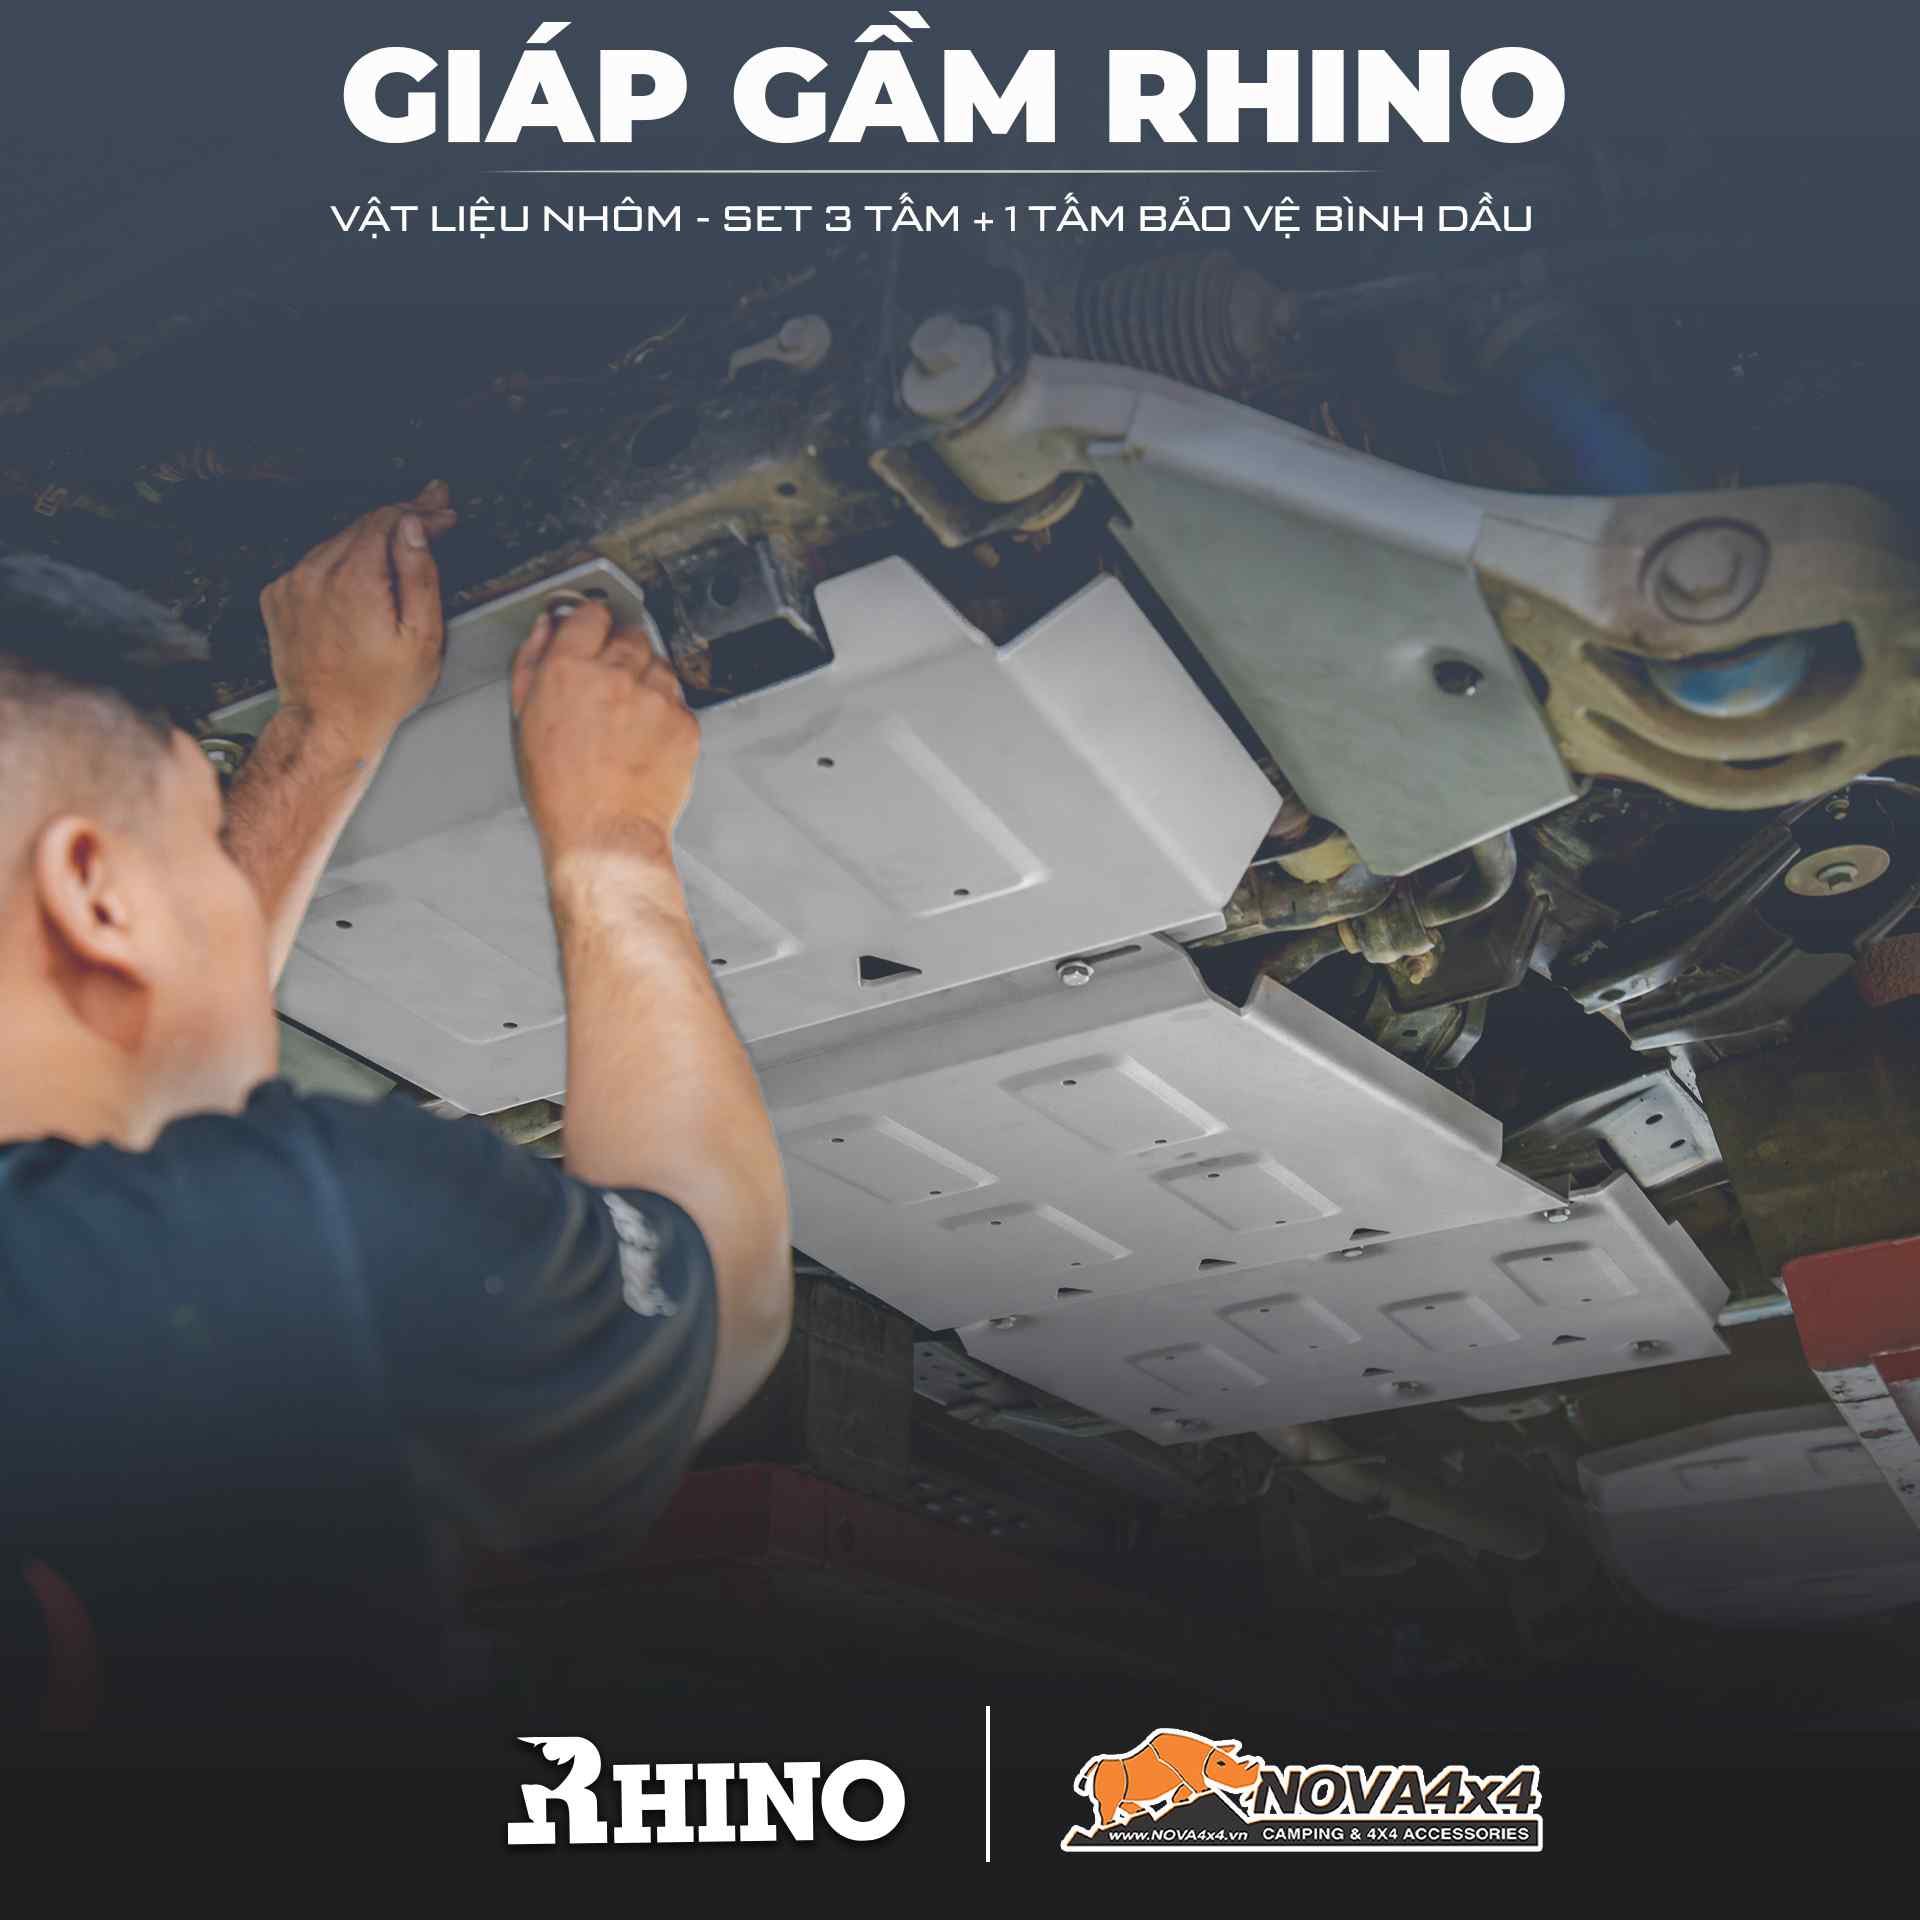 Giáp gầm Rhino dễ dàng lắp đặt